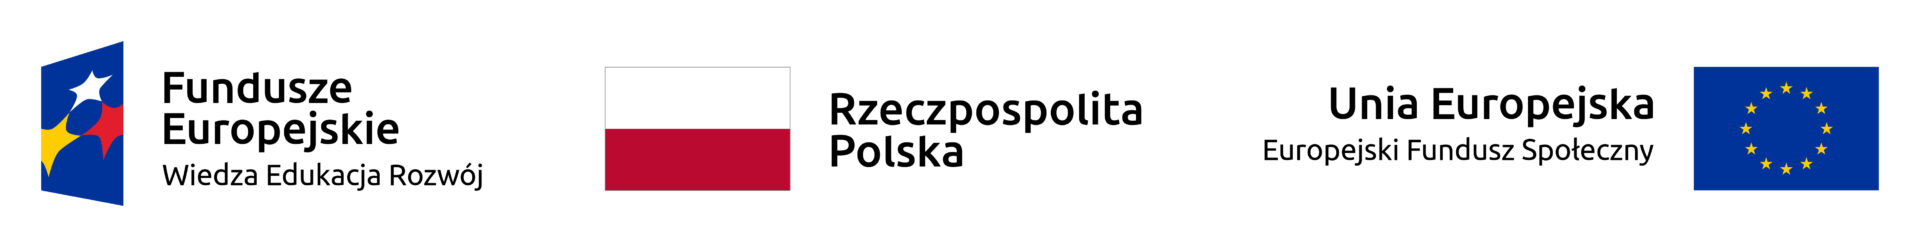 Logotypy: Fundusze Europejskie, flaga Polski, Unia Europejska.